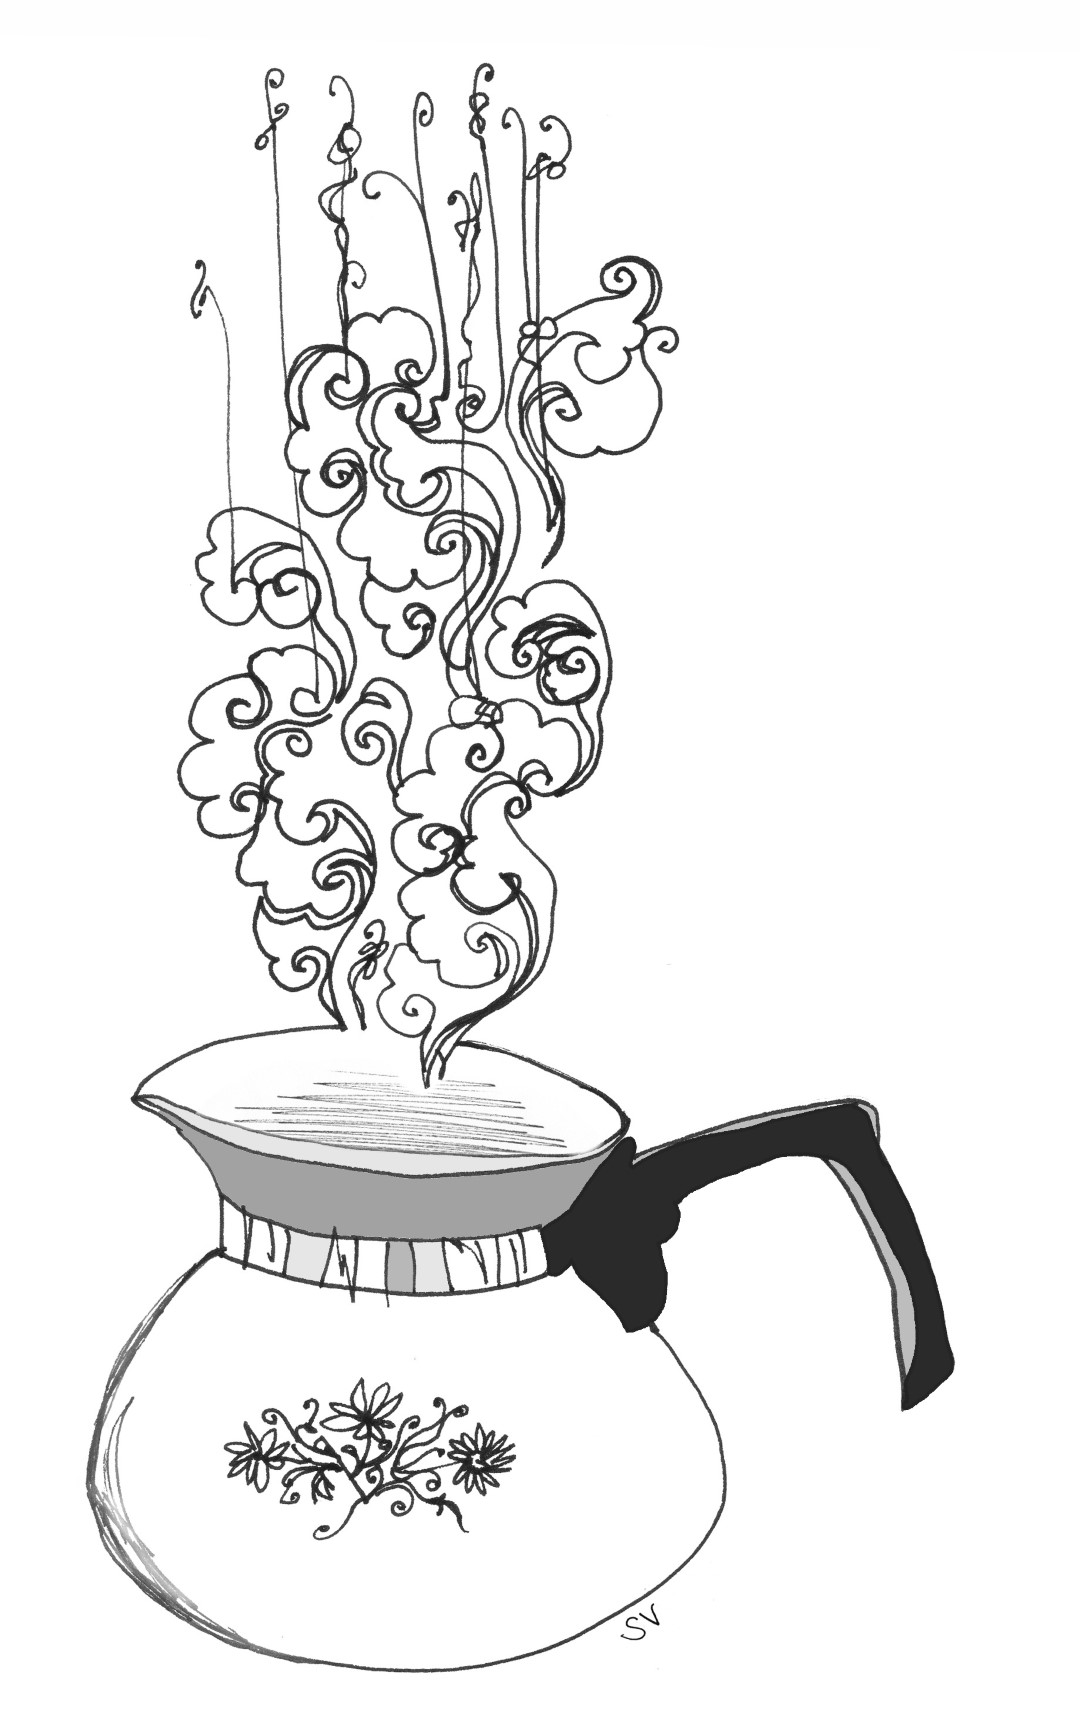 Une bouilloire Corning Ware blanche à poignée noire, ornée d'un motif de fleurs, dont s'échappe des volutes de vapeur tarabiscotées.